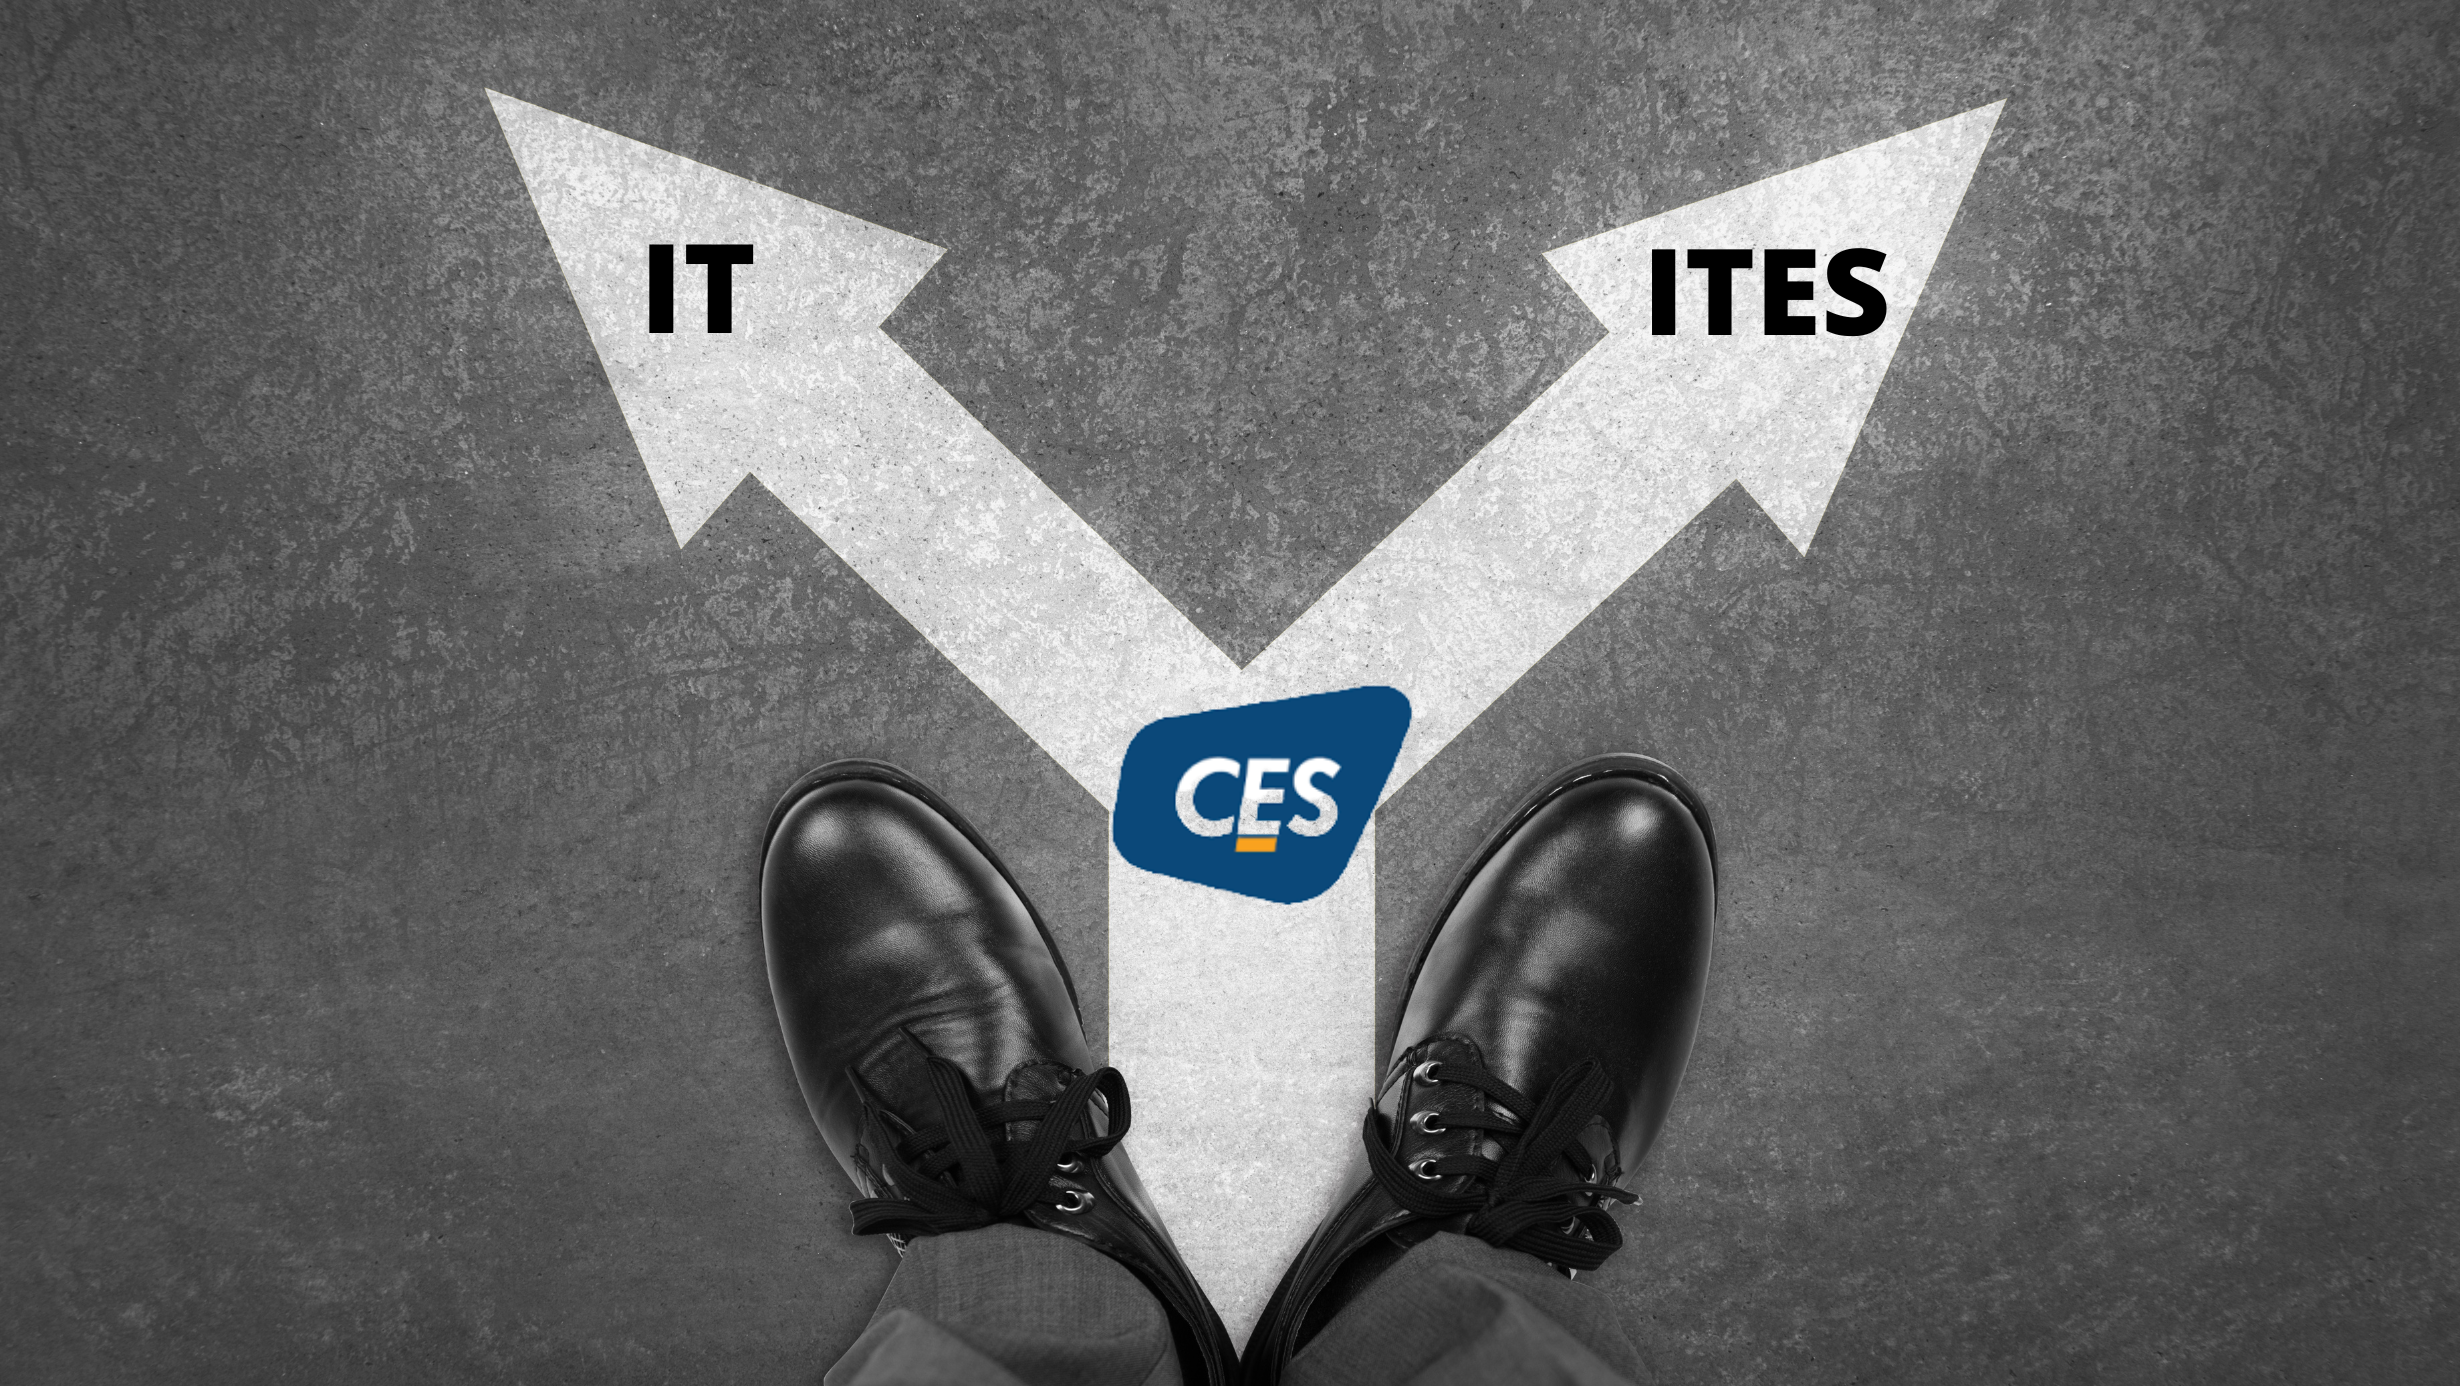 CES-IT-ITES-Demerger